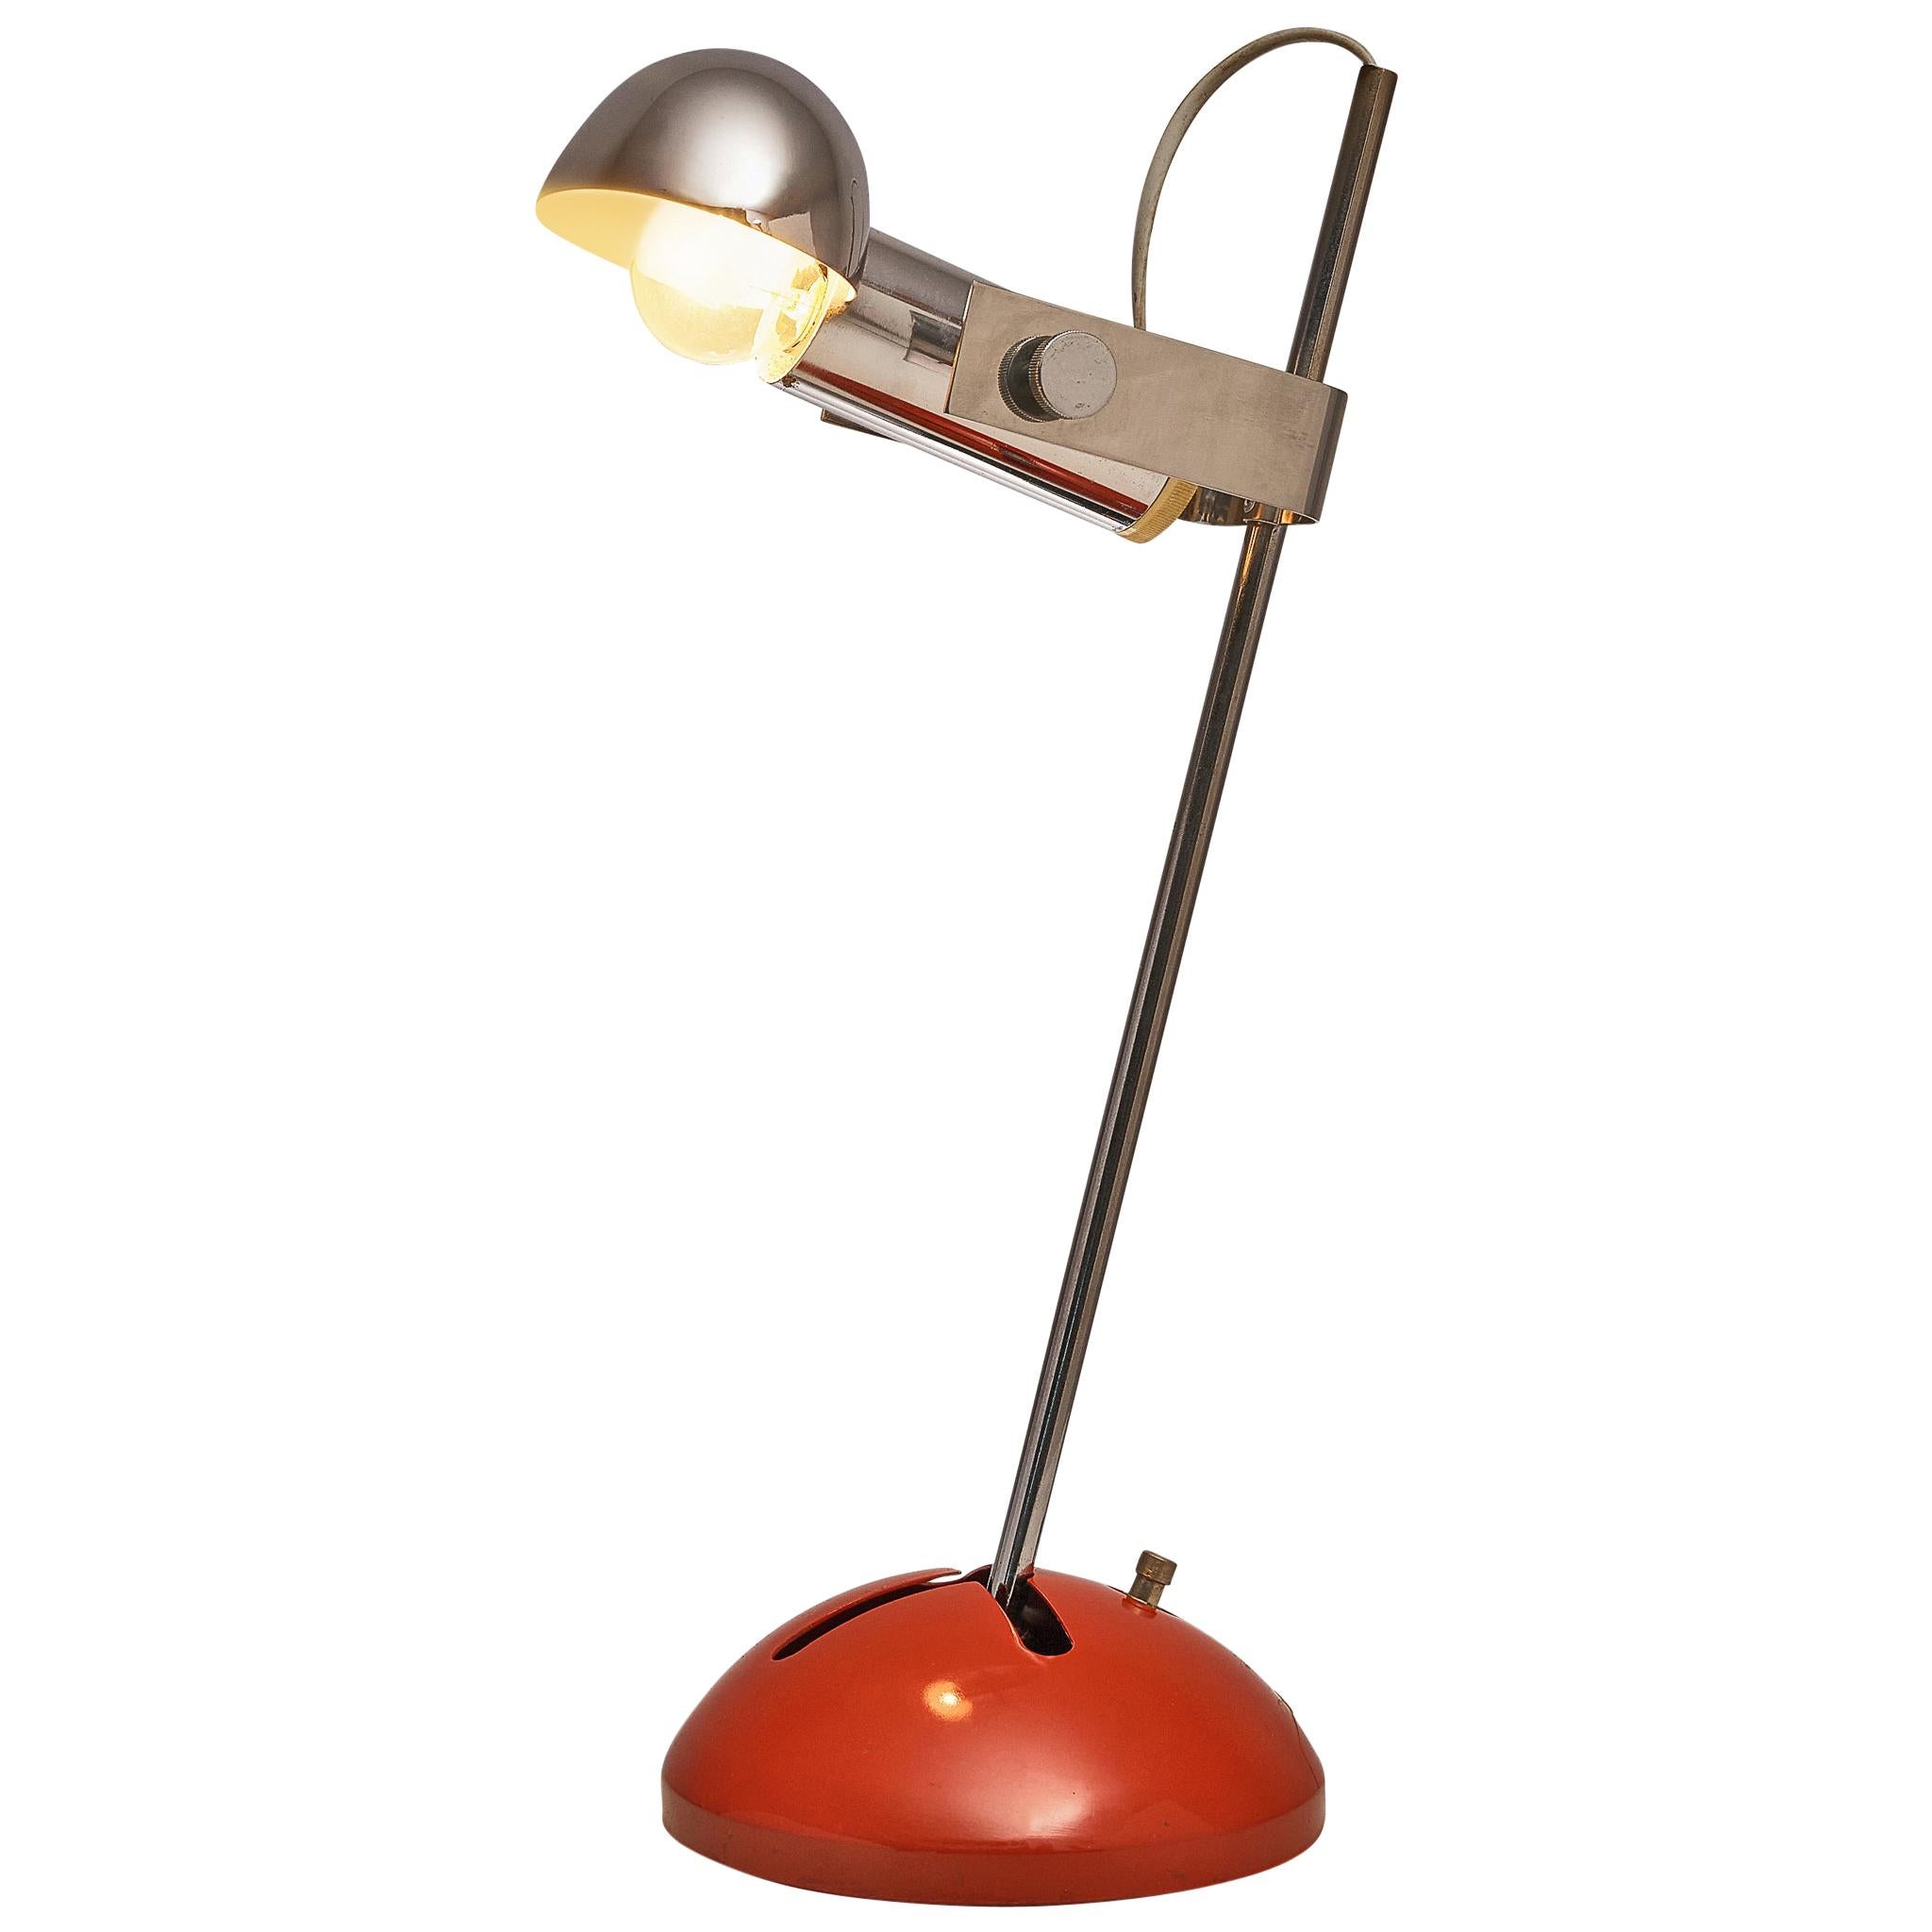 Robert Sonneman für Luci Cinisello, Tischlampe Modell 395 aus Chrom und rotem Metall